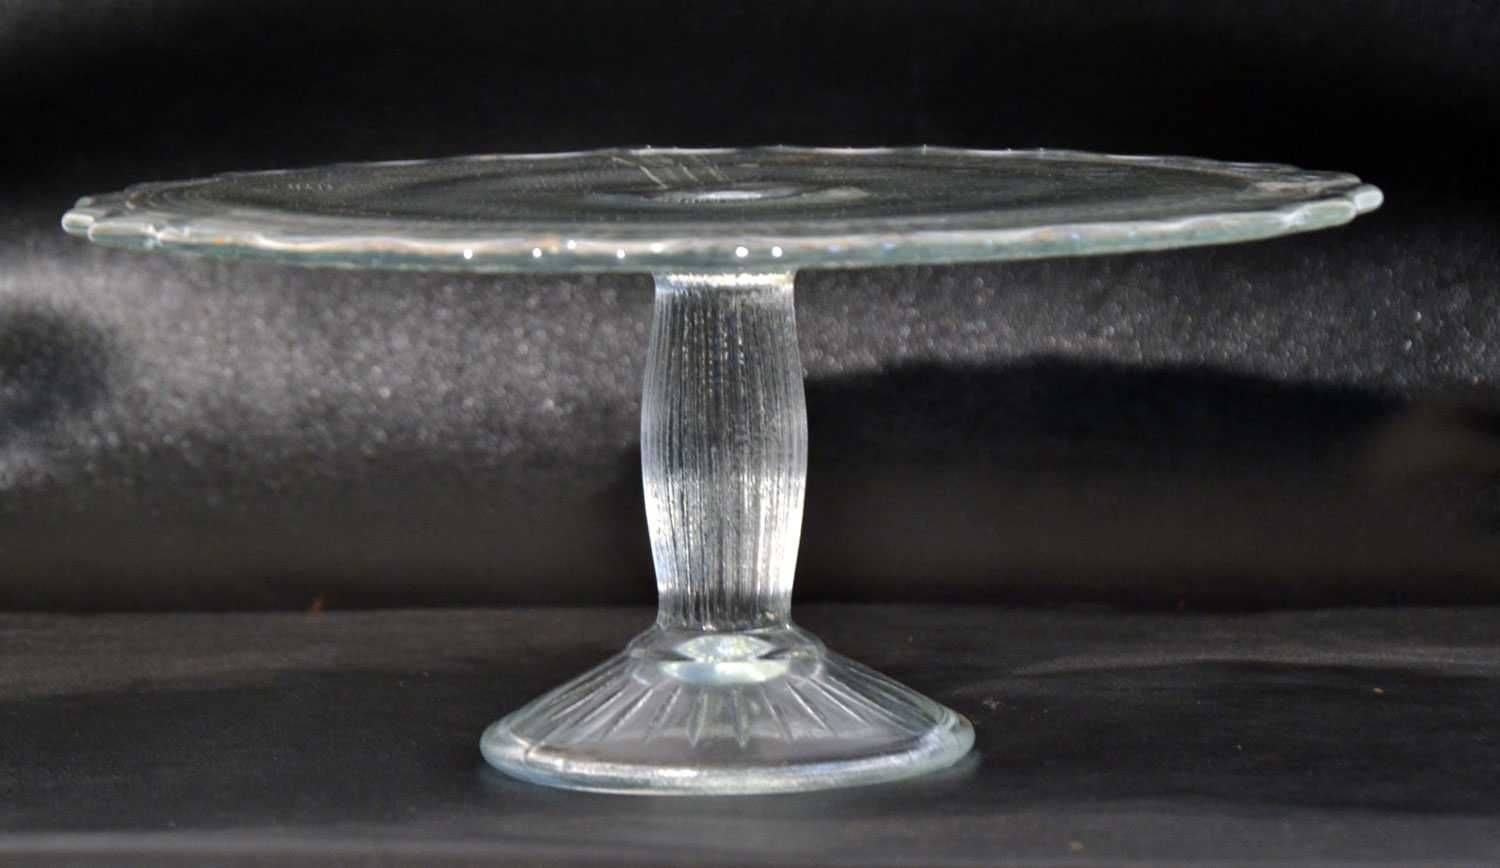 Patera szklana kryształowa duża tortownica SHG Ząbkowice bardzo ładna